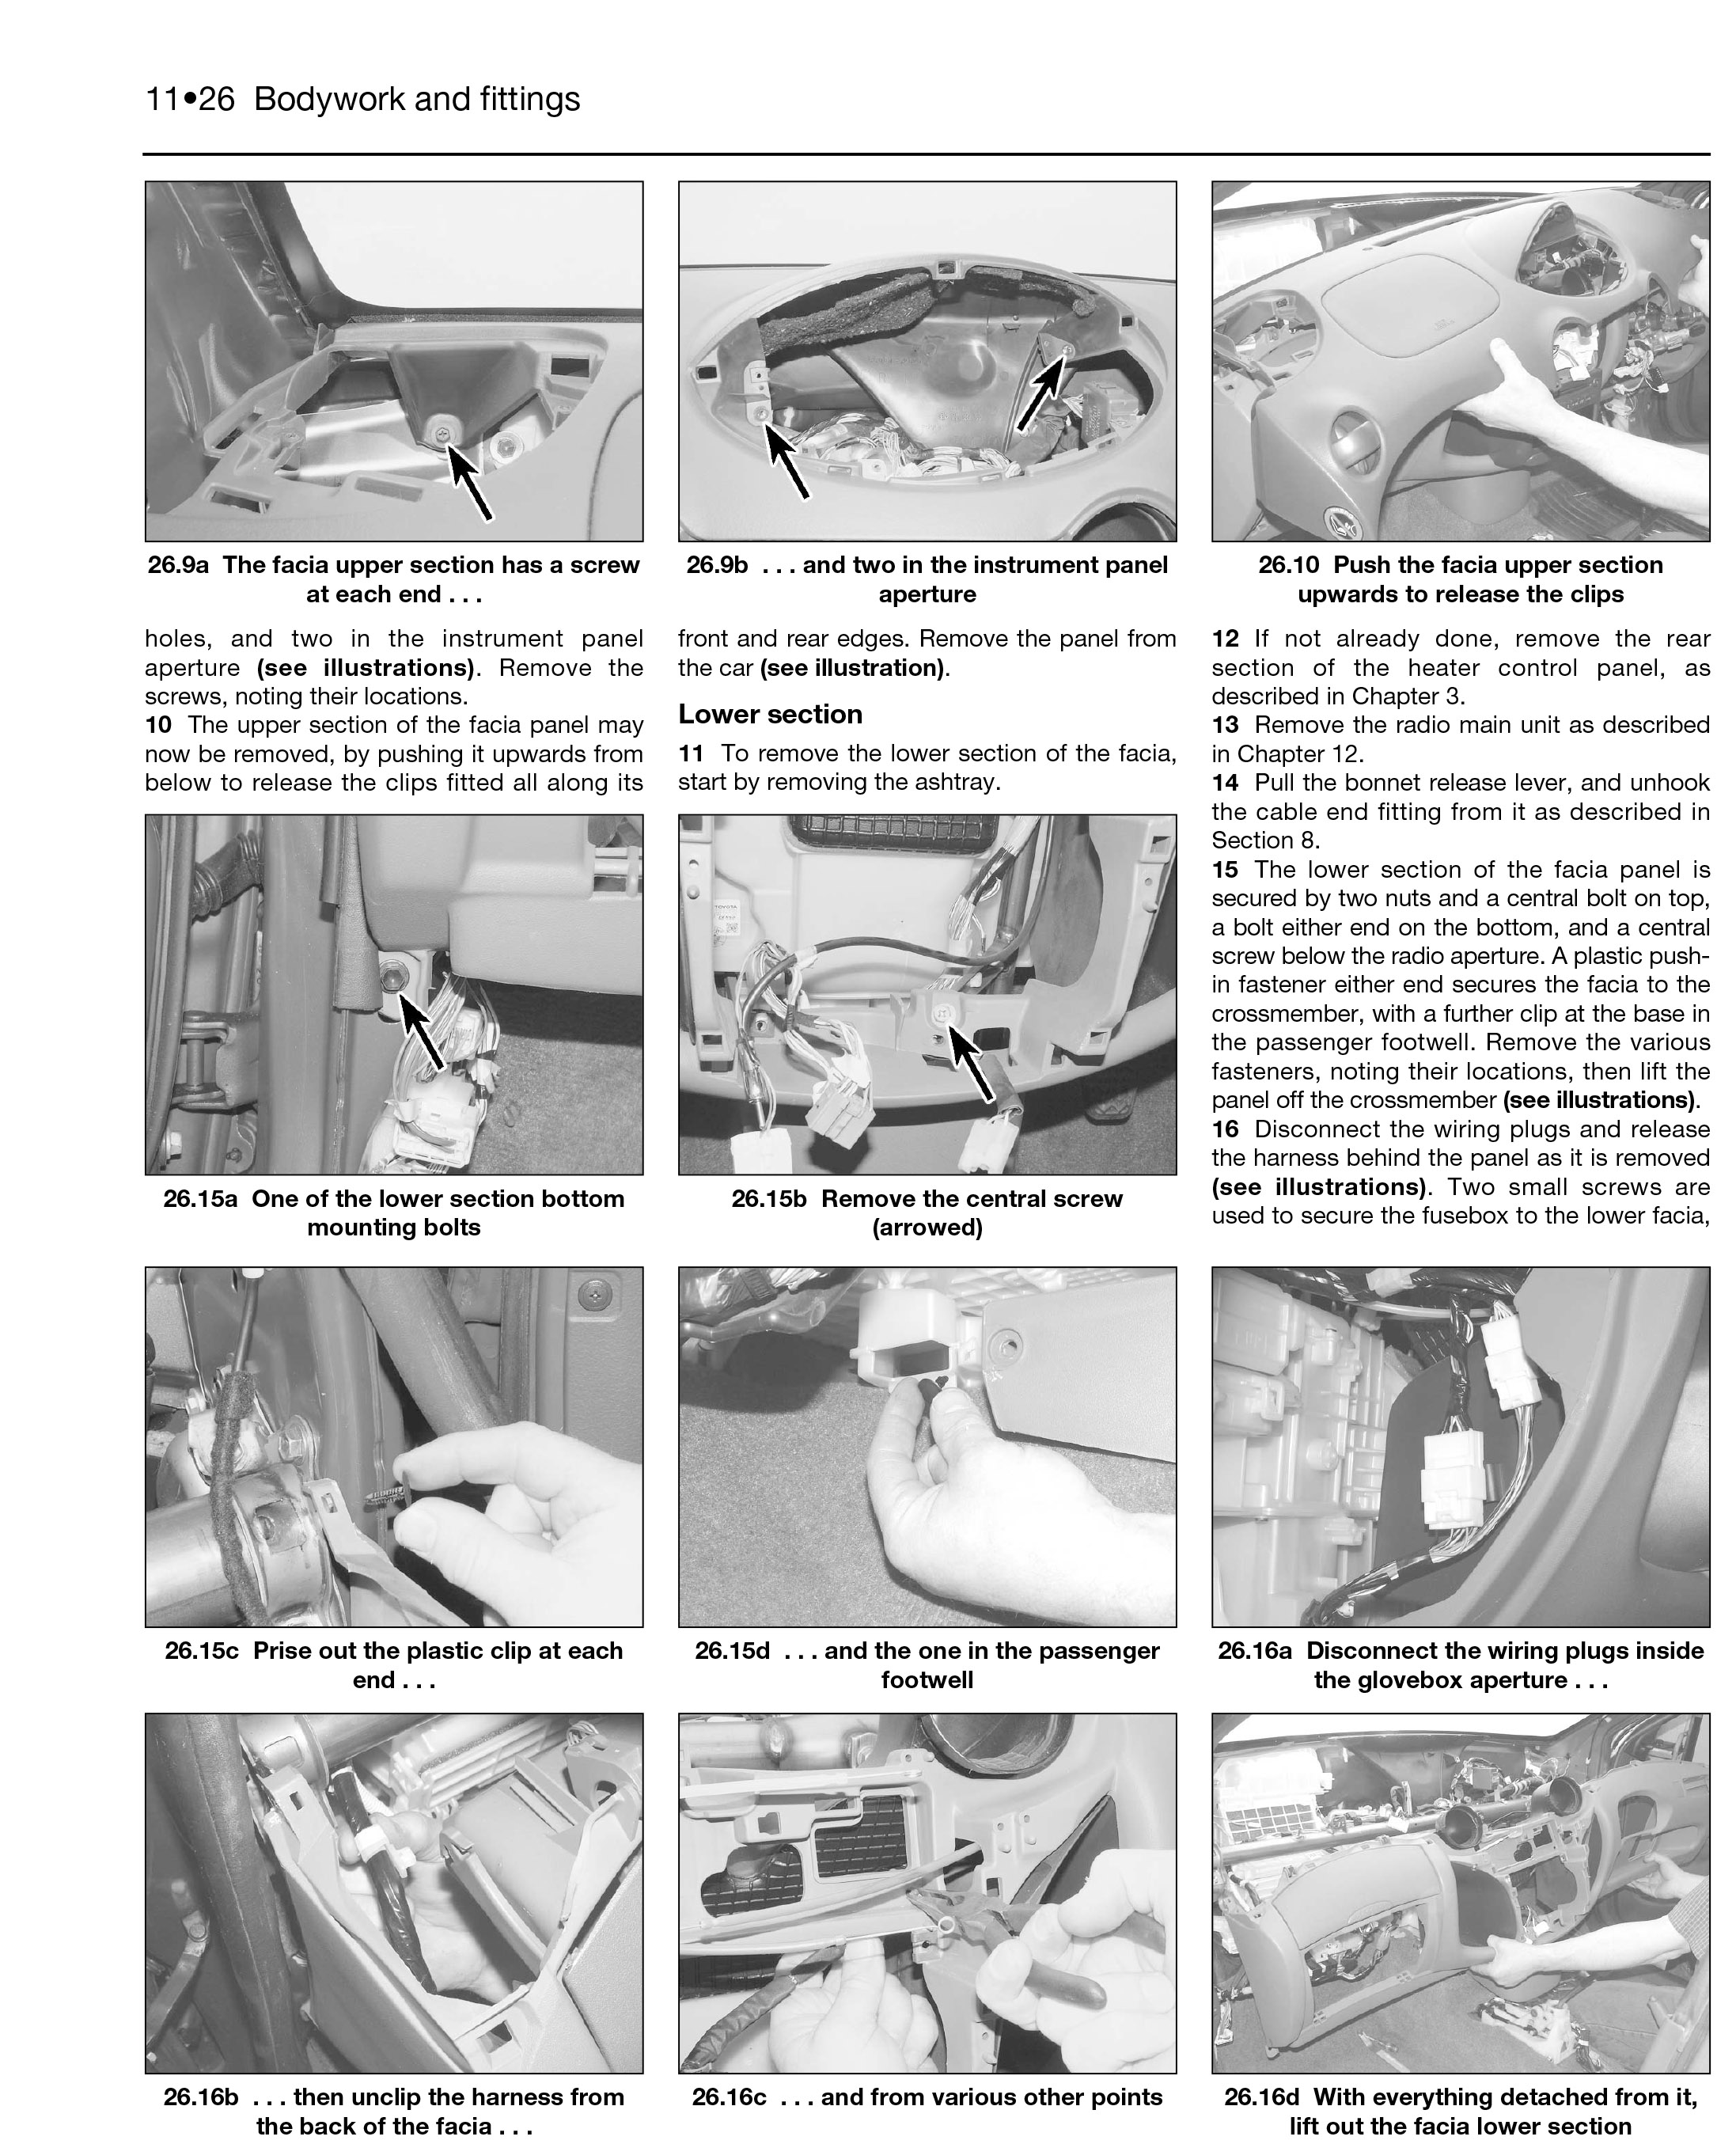 2010 toyota yaris repair manual